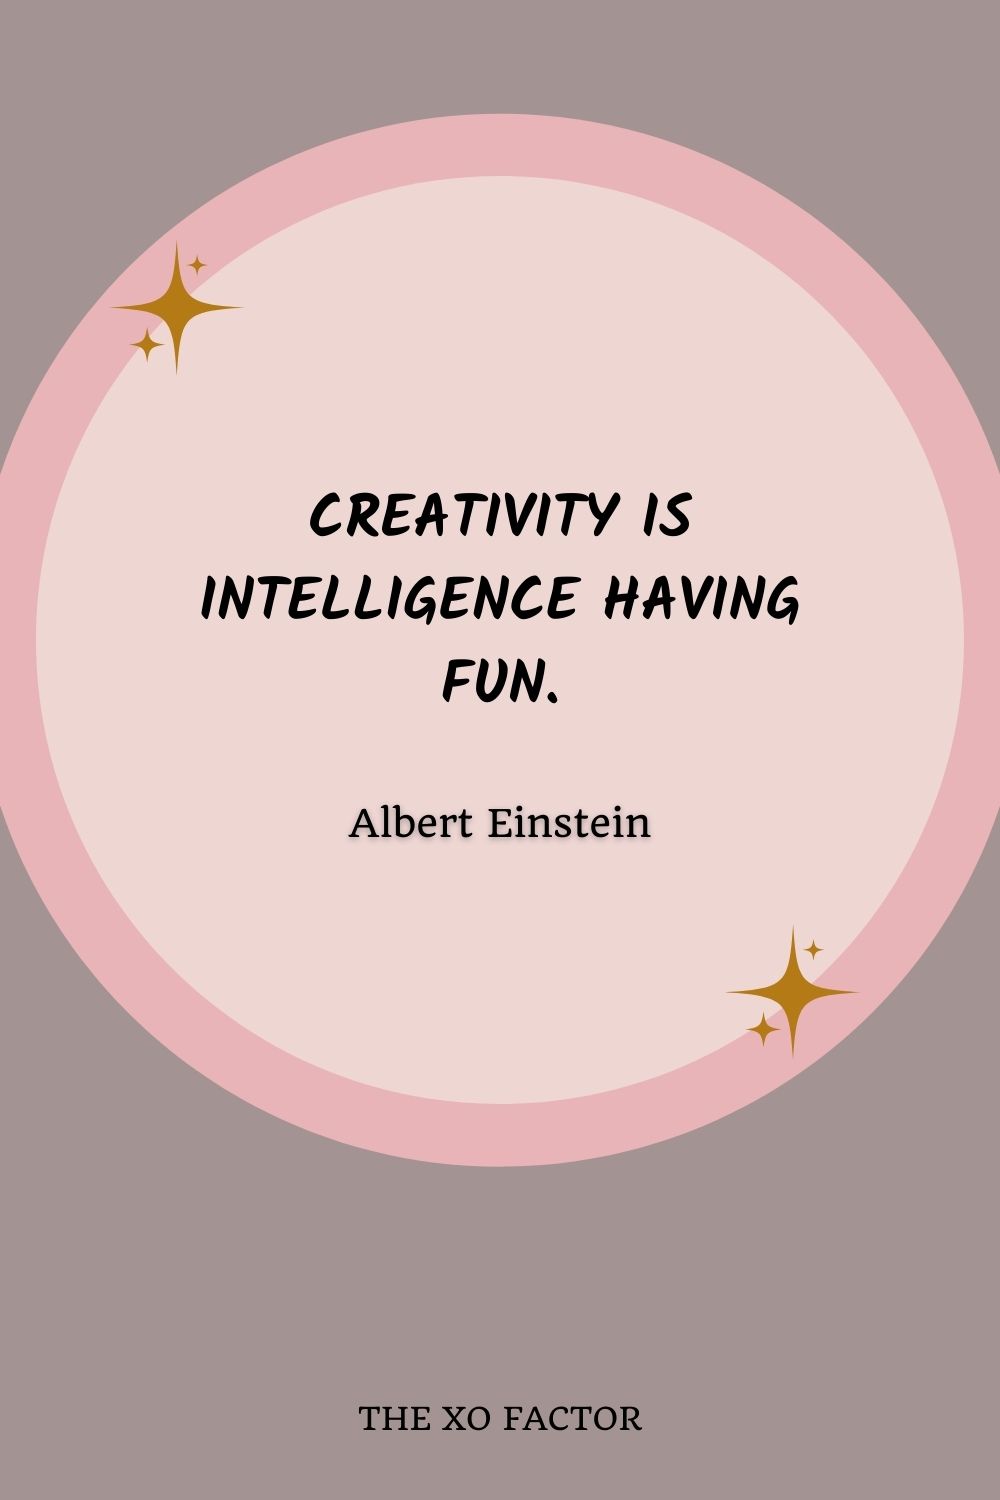 Creativity is intelligence having fun.” – Albert Einstein